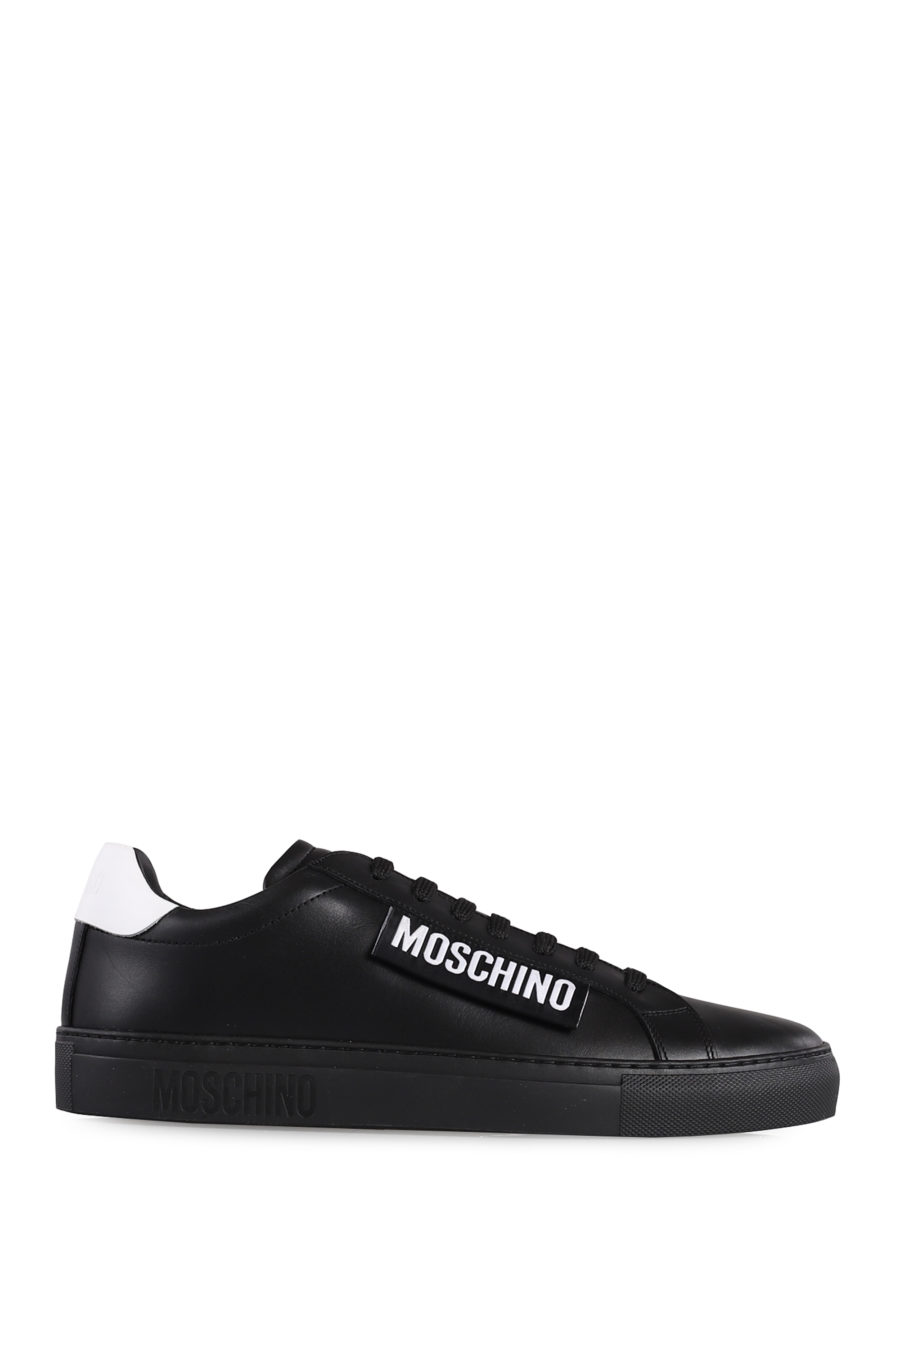 Zapatillas negras con logotipo blanco - IMG 1049